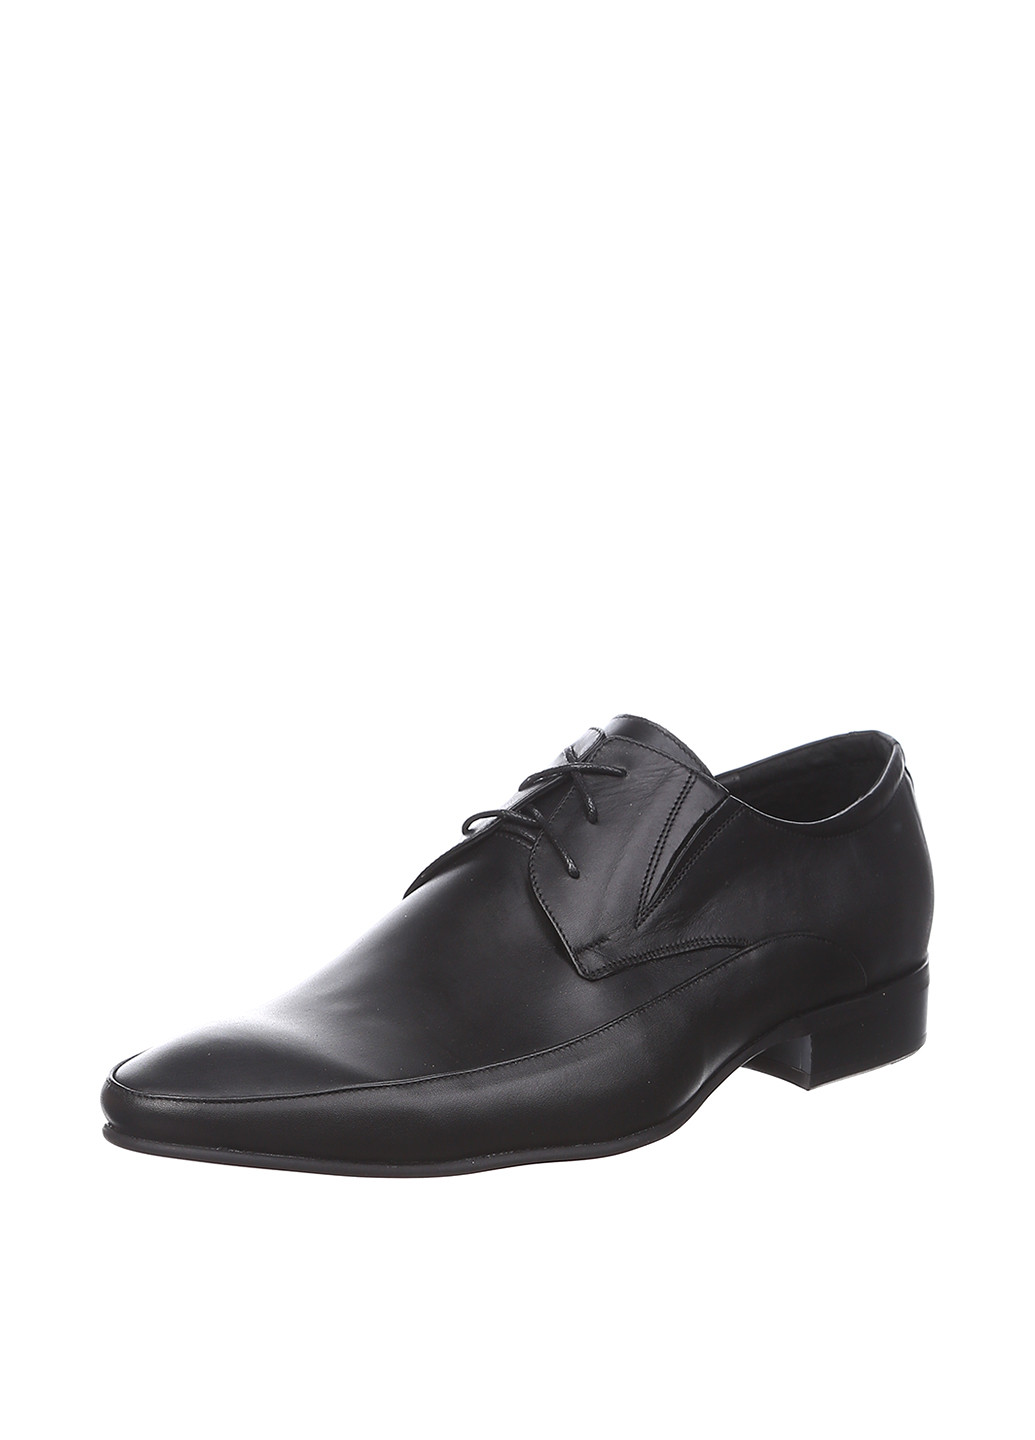 Черные классические туфли Kolpashnikov на шнурках